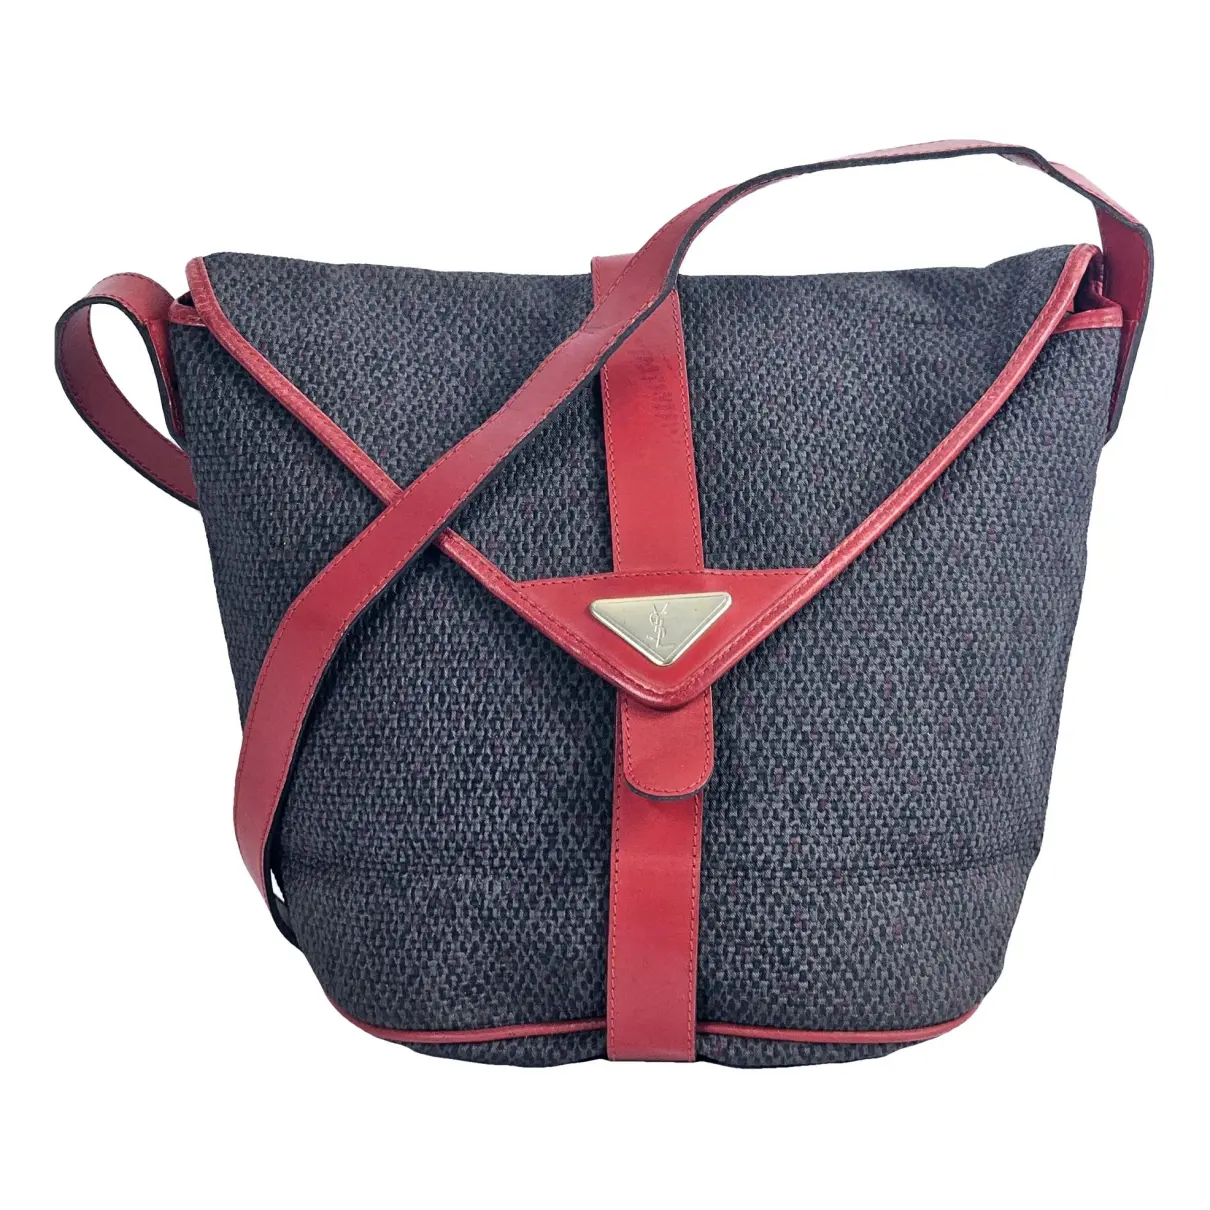 Velvet handbag Yves Saint Laurent